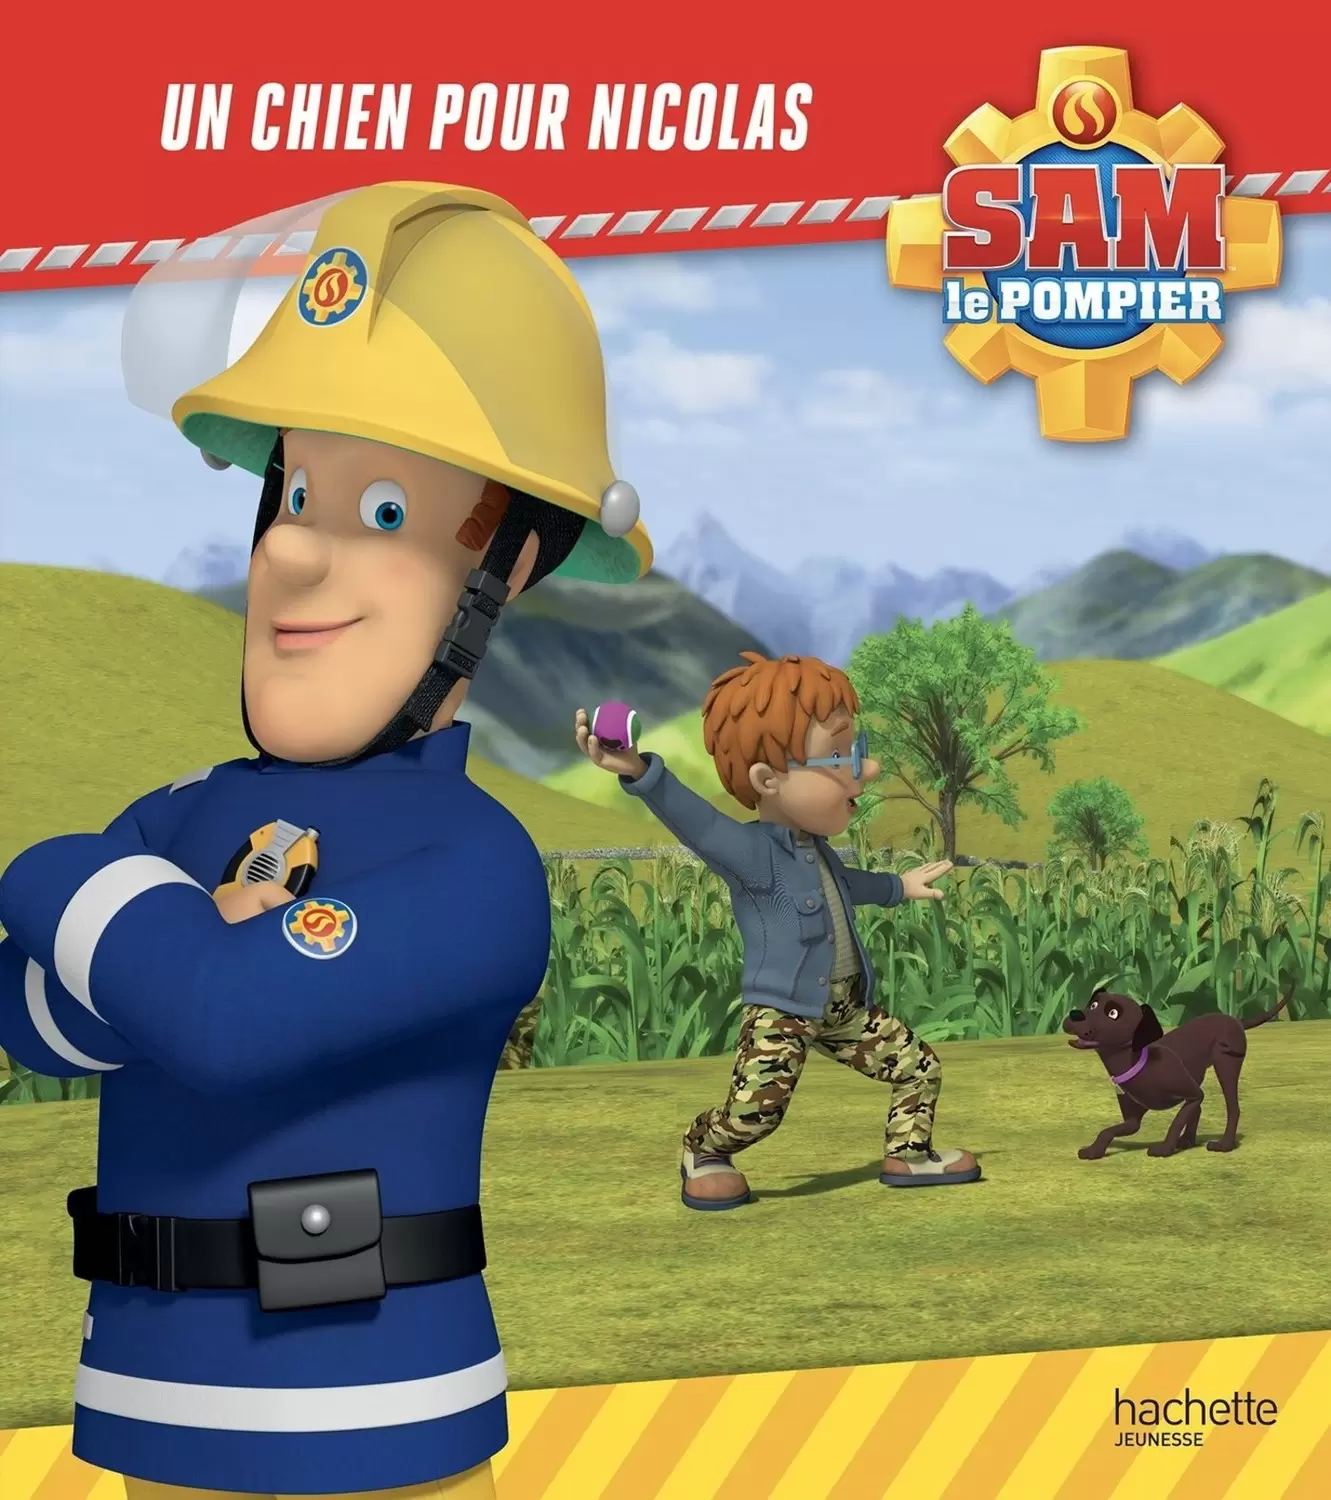 Sam le pompier - Un chien pour Nicolas